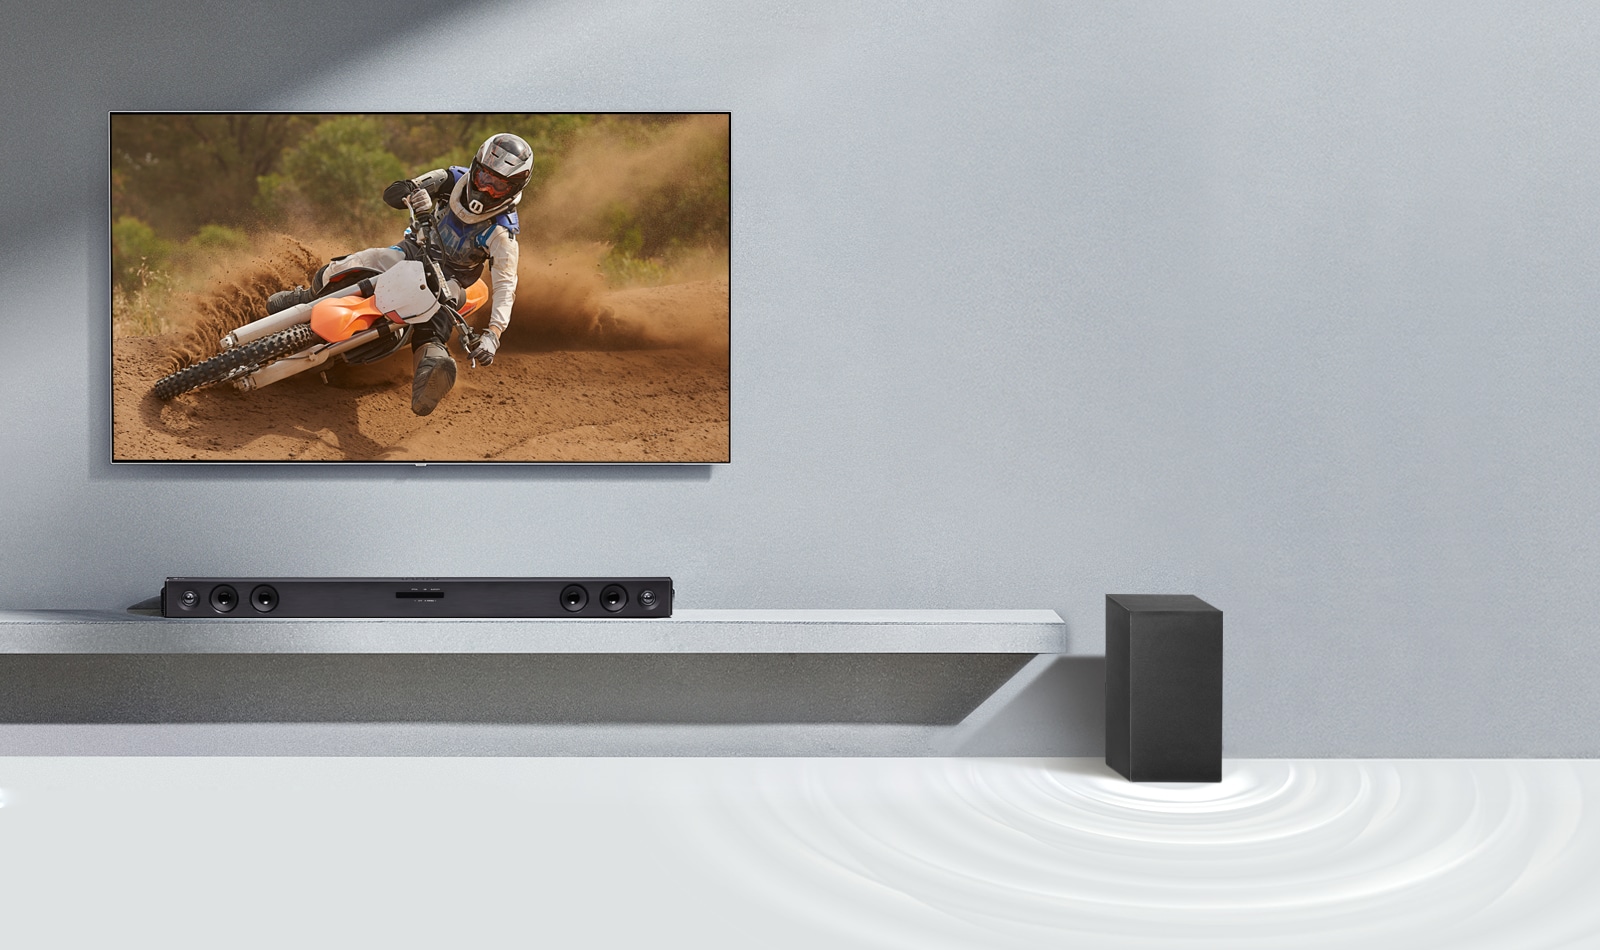 La barra de sonido LG SQC2 y el televisor LG están colocados juntos en el salón. El subwoofer está colocado junto a la barra de sonido. El televisor está encendido y muestra una imagen de una motocicleta.